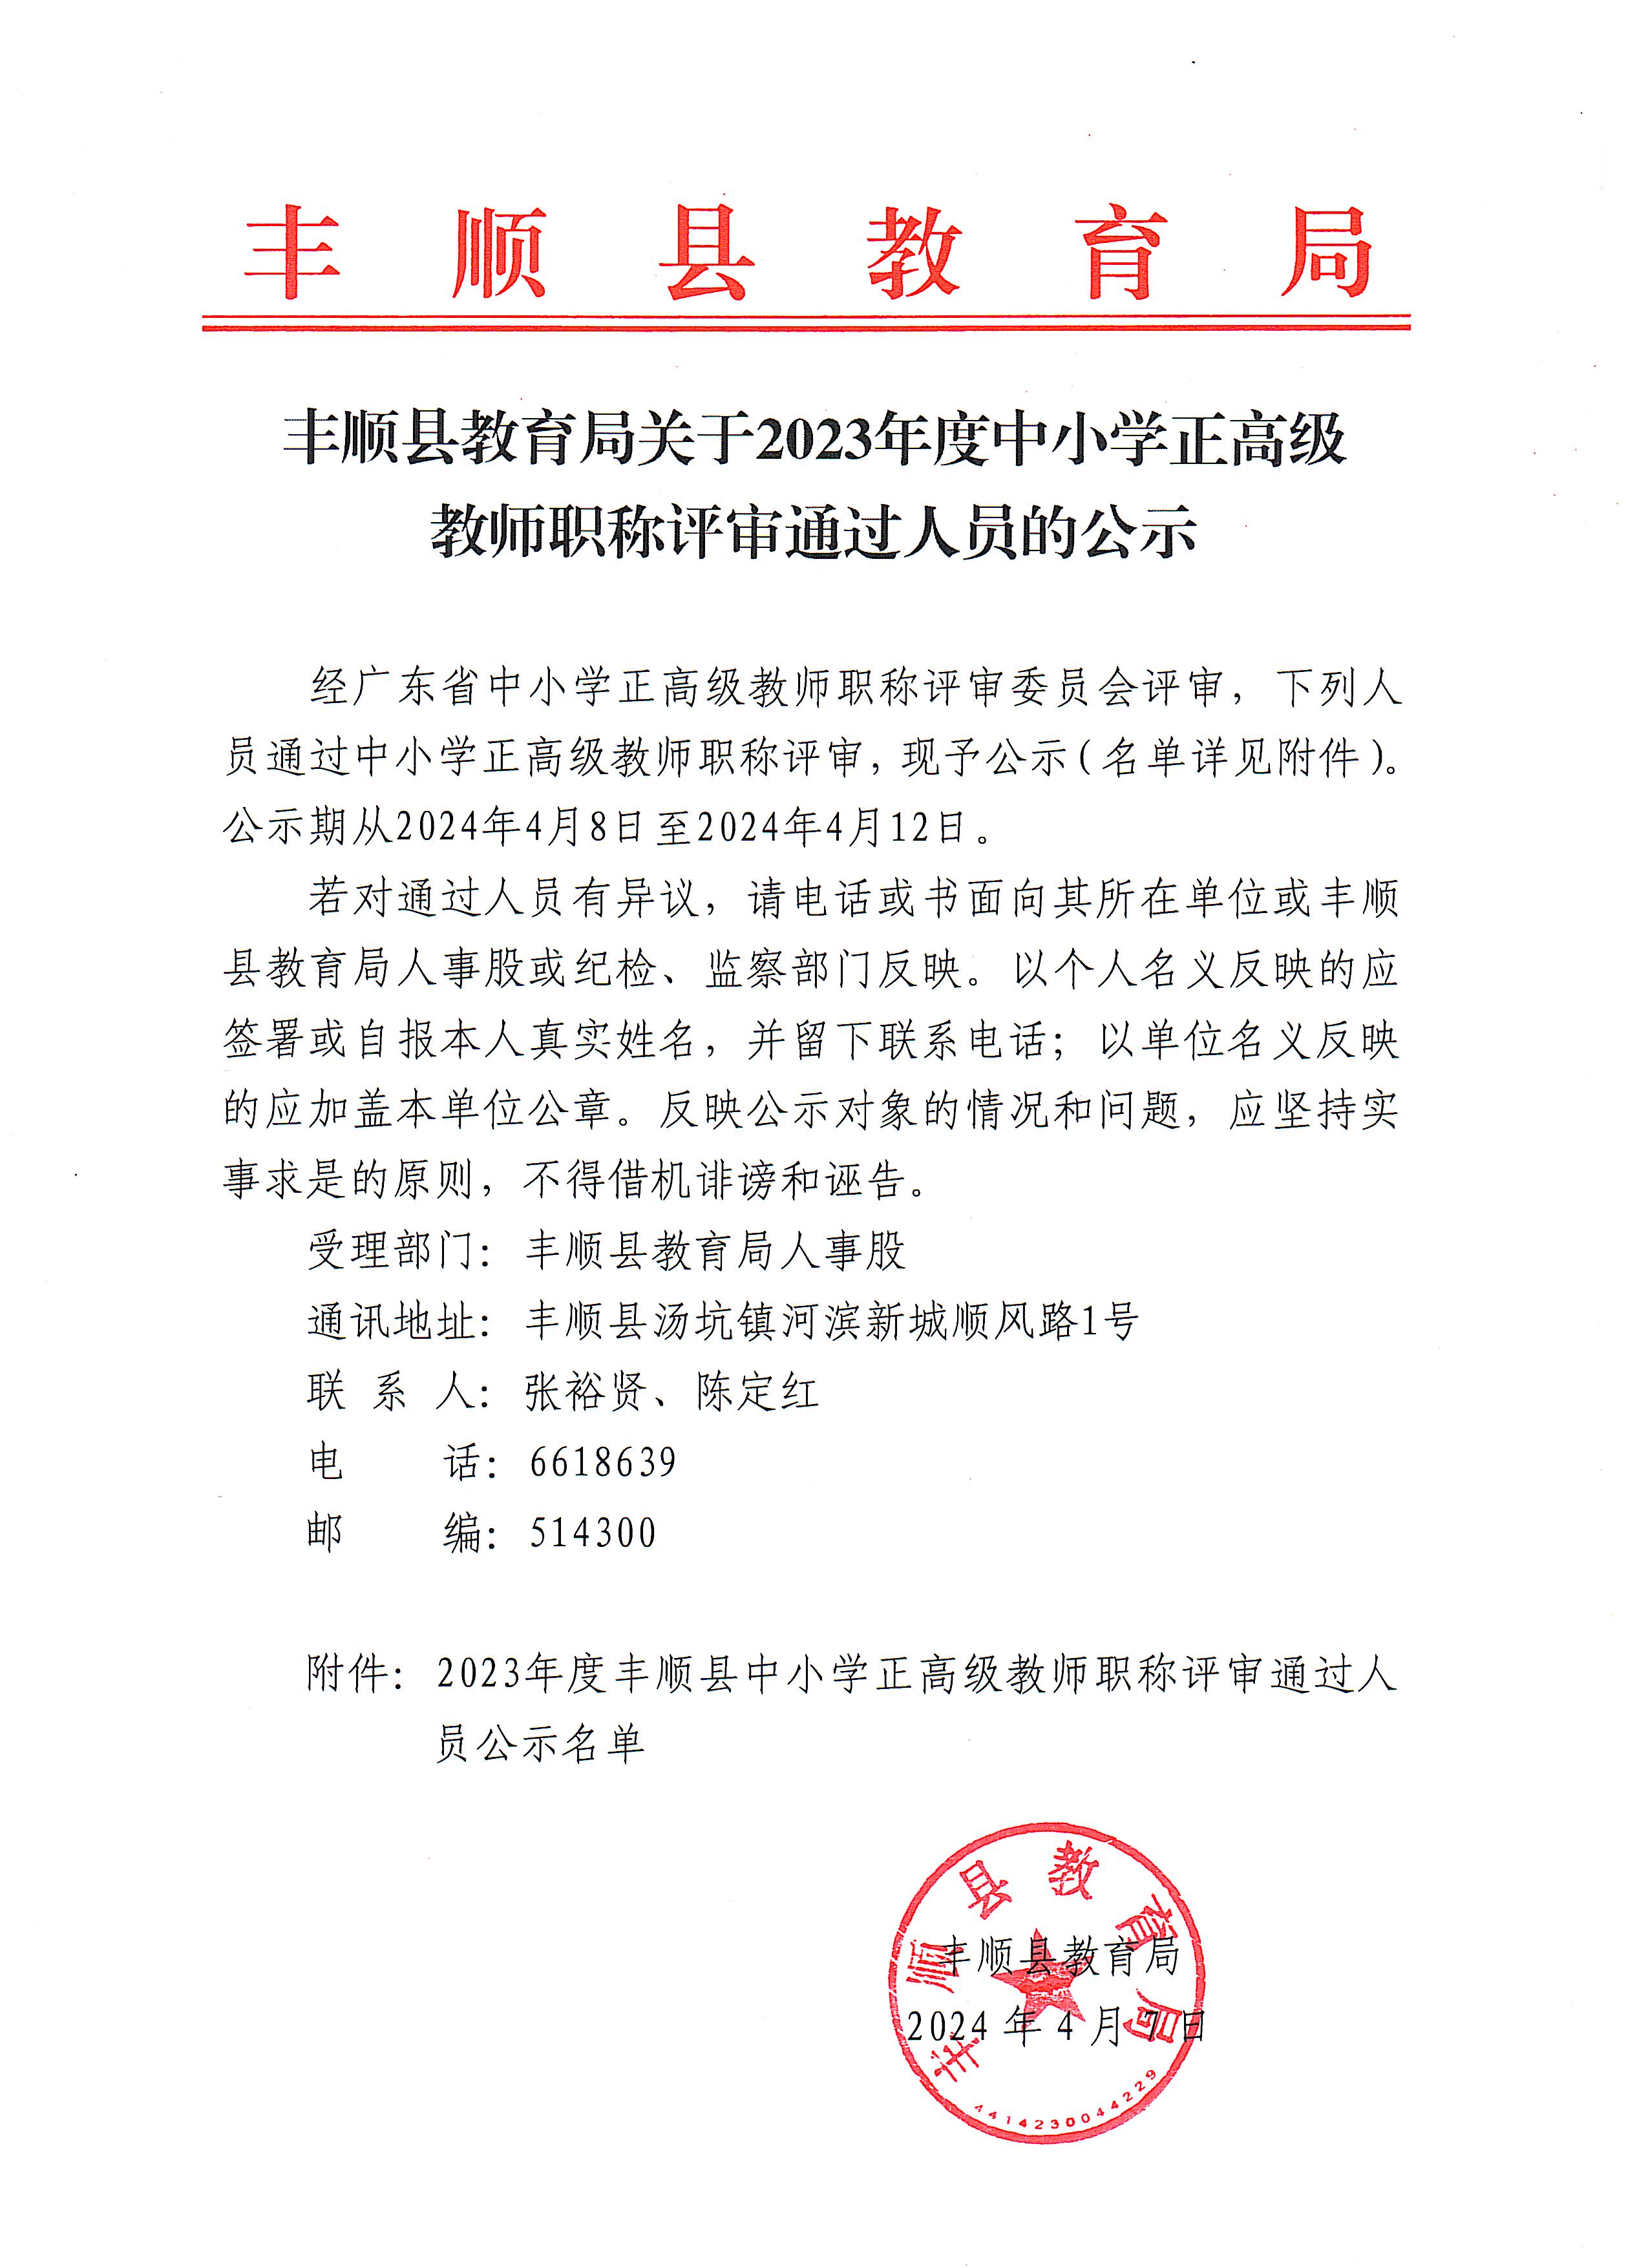 丰顺县教育局关于2023年度中小学正高级教师职称评审通过人员的公示.jpg